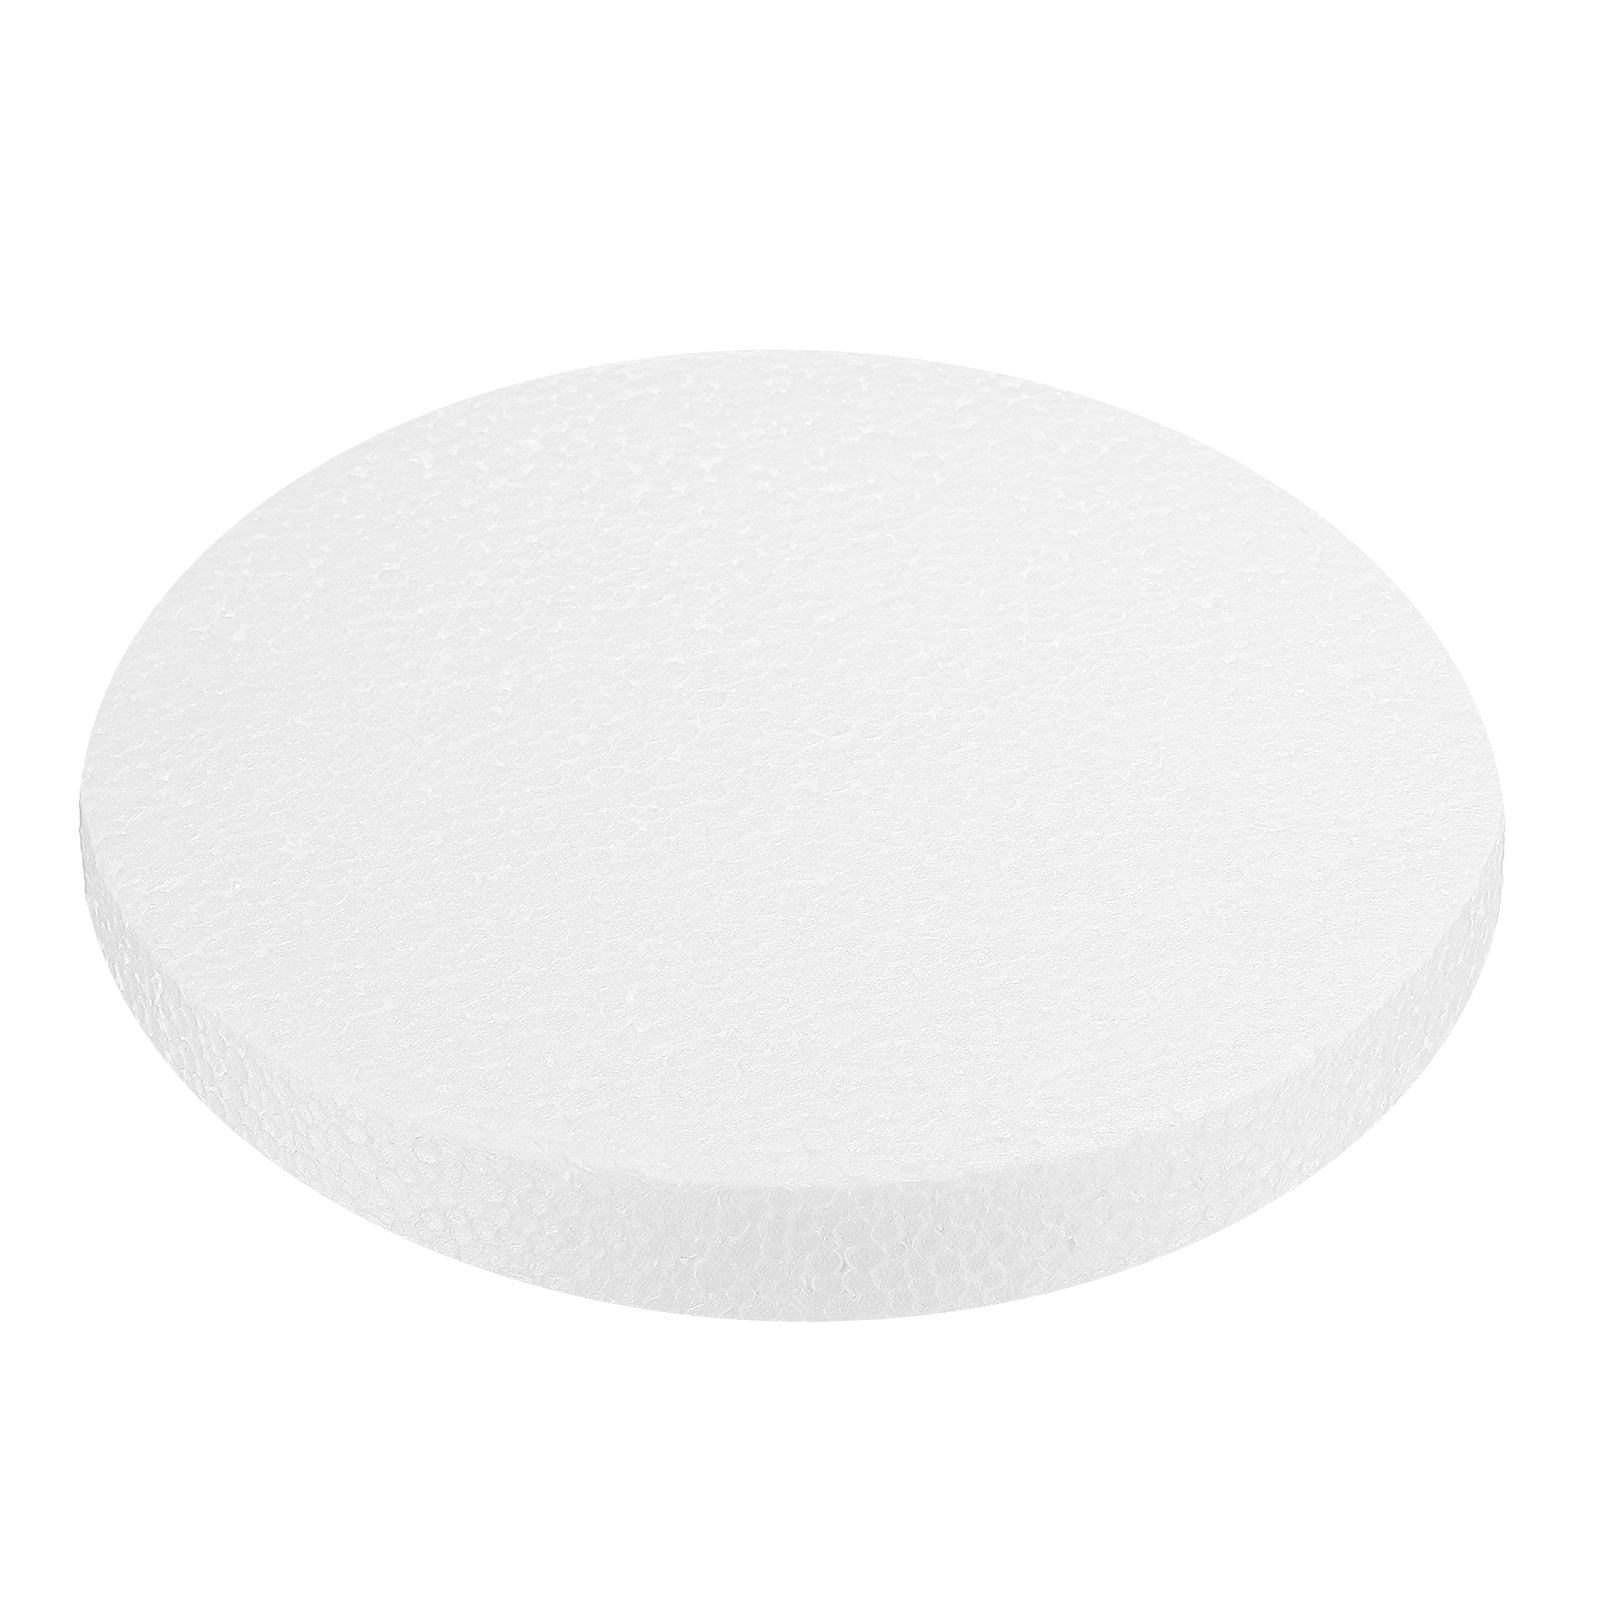 Foam Sheets for Crafts 11.81 x 5.91 x 5.91 Inch Polystyrene Foam Board